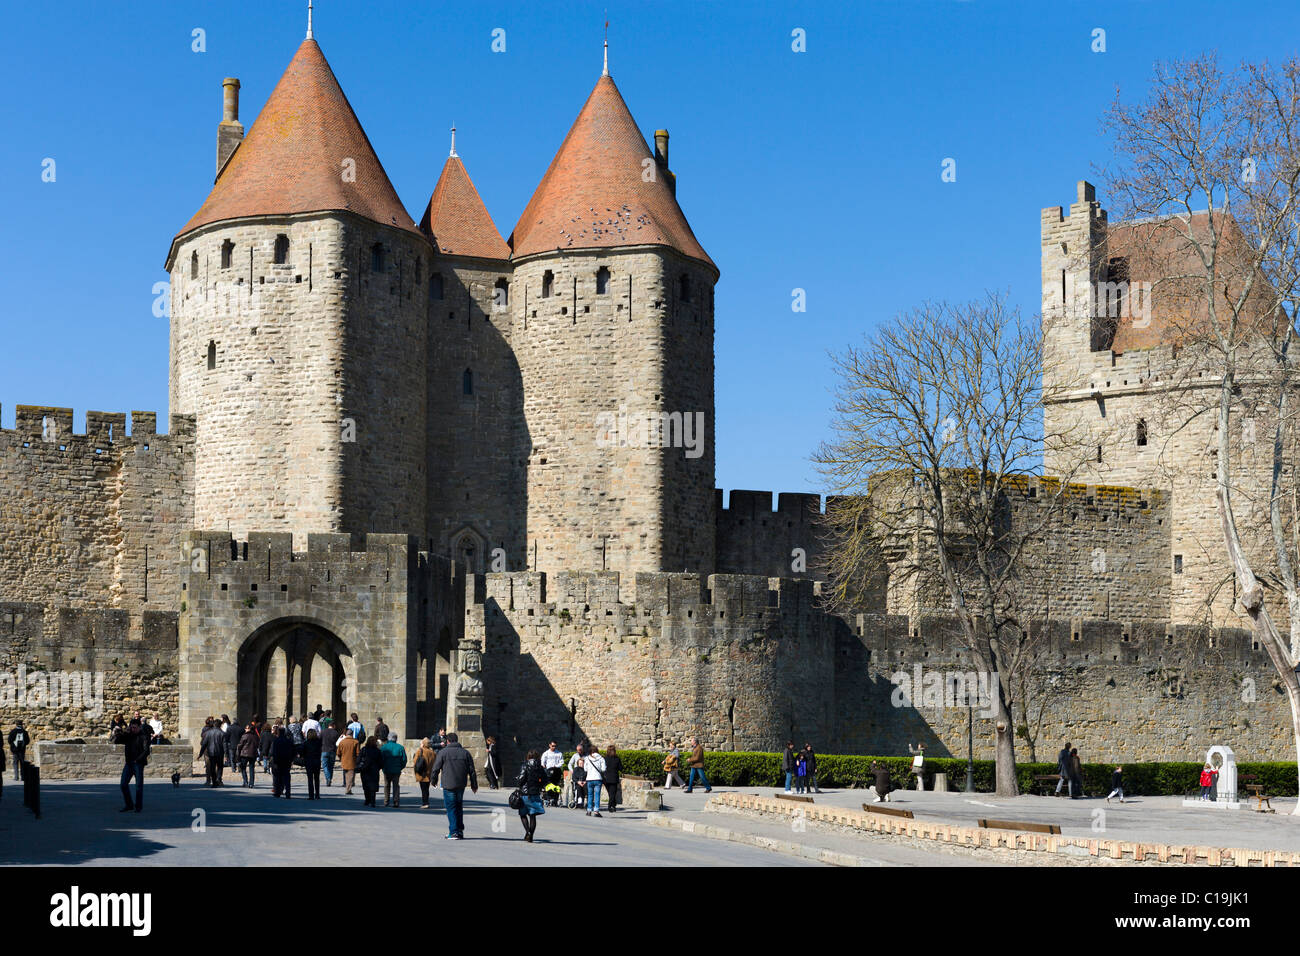 Die Porte Narbonnaise in der mittelalterlichen Stadtmauer (Cite) von Carcassonne, Languedoc, Frankreich Stockfoto